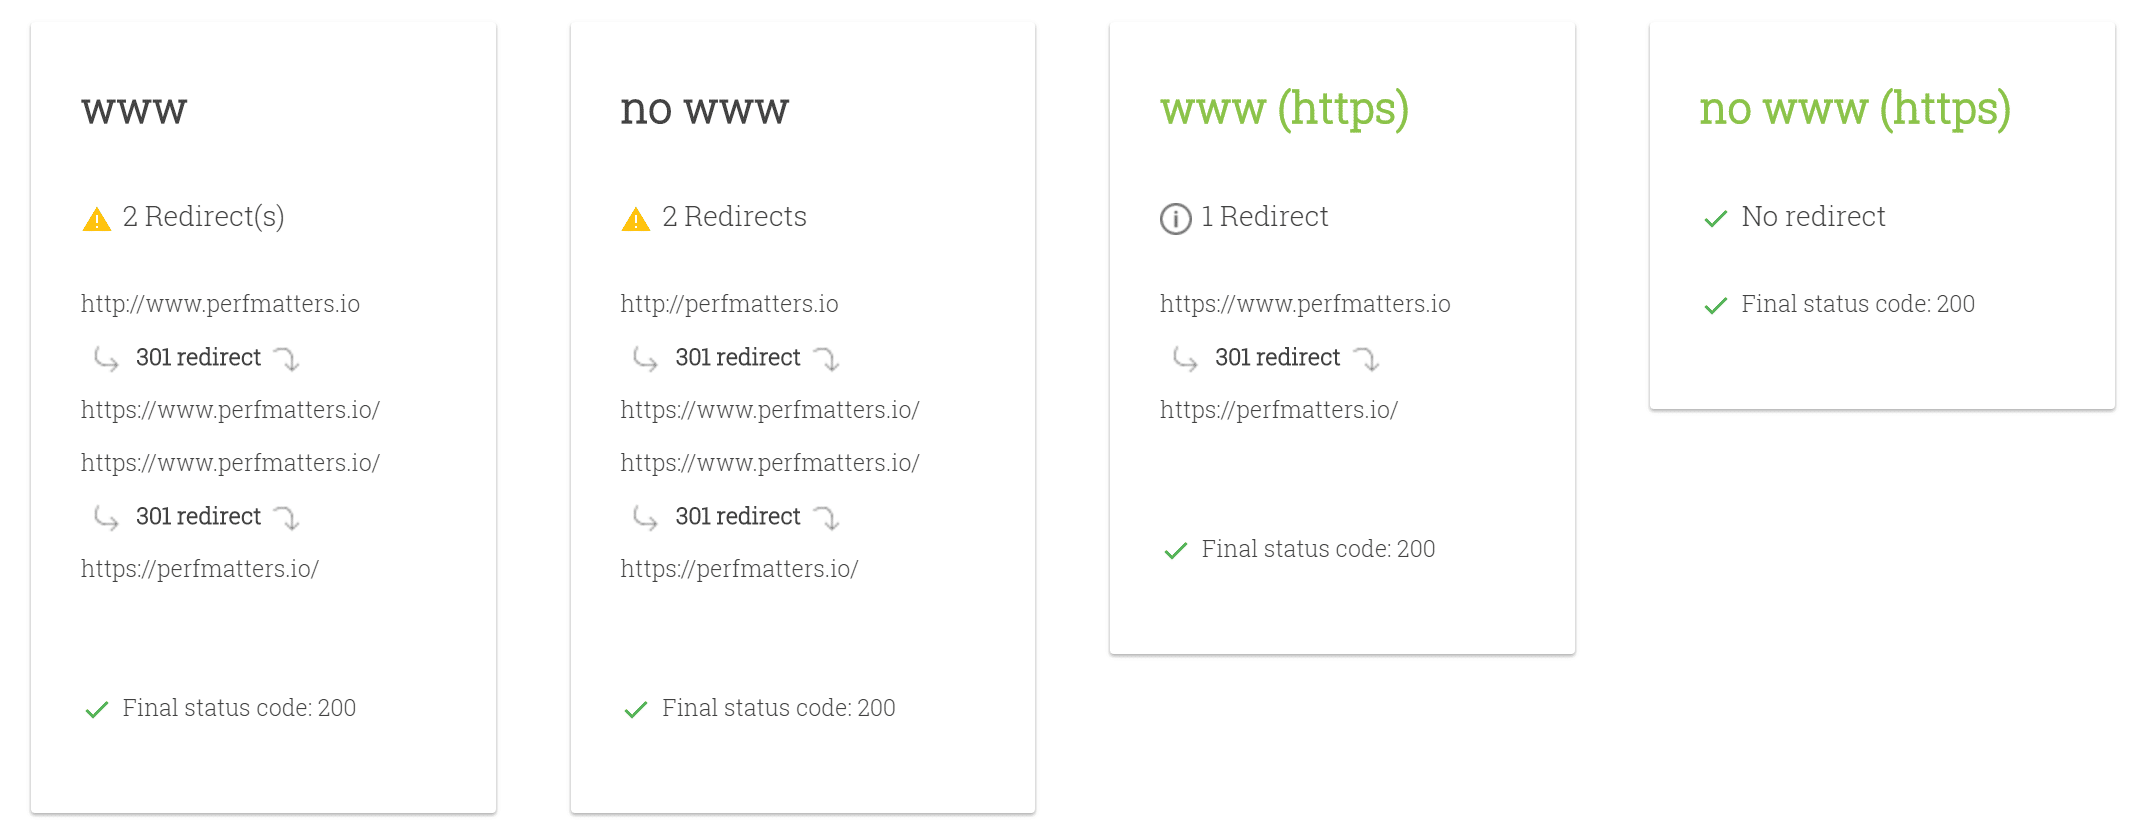 Przekierowania https nie są poprawnie skonfigurowane